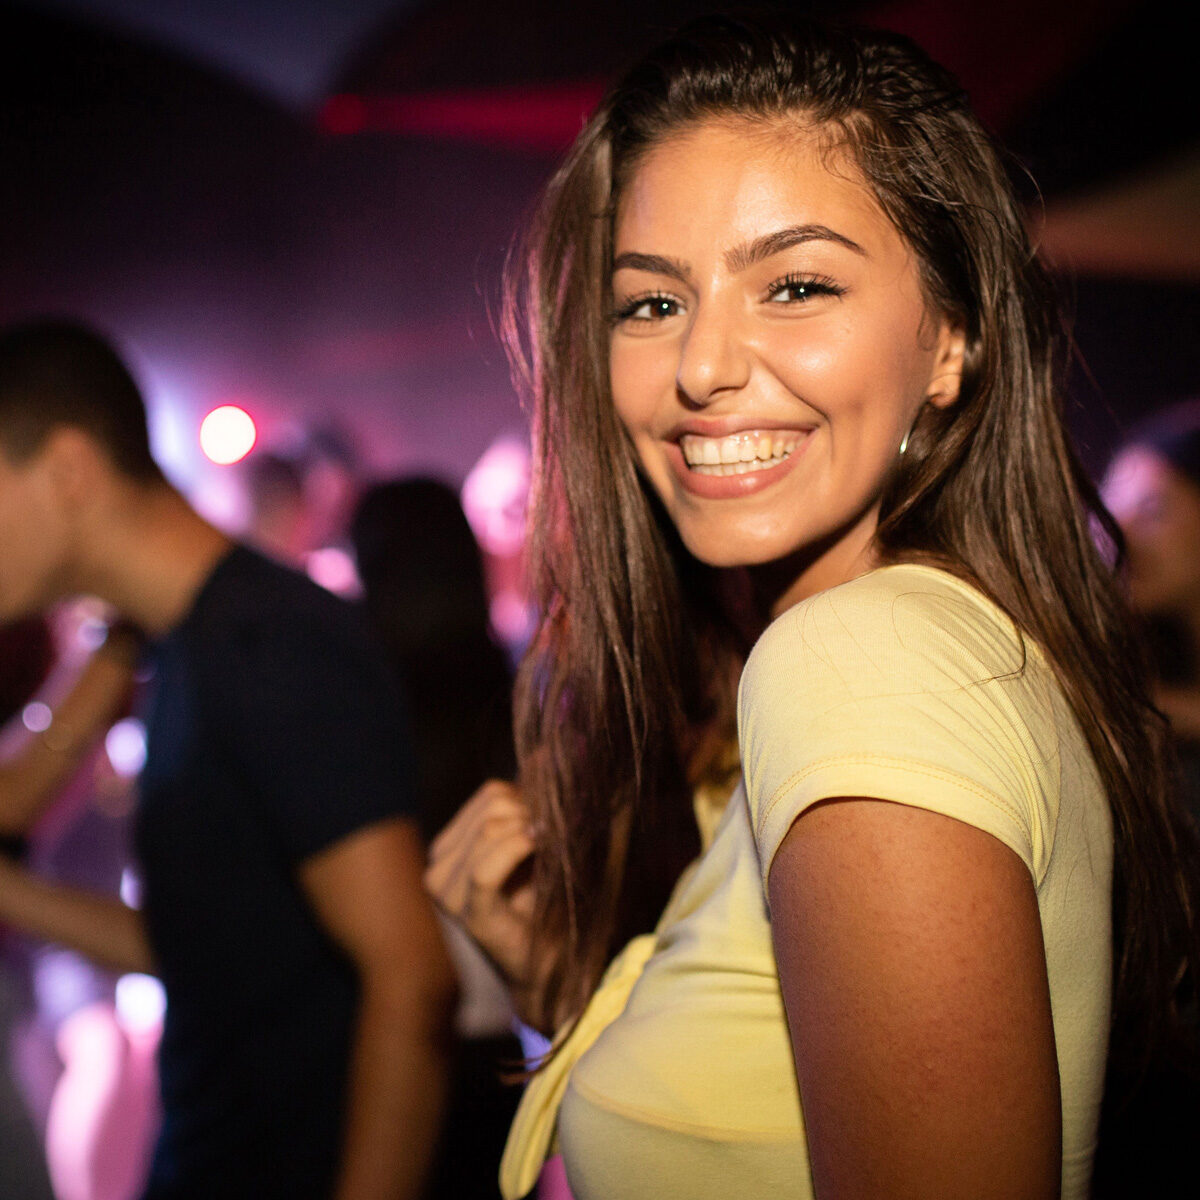 Una chica latina joven y de hermosa sonrisa posa de lado en una pista de baile, aparentemente en una discoteca. Tiene una camiseta pegada amarilla de mangas cortas y detrás se nota la dinámica social de un sitio nocturno.